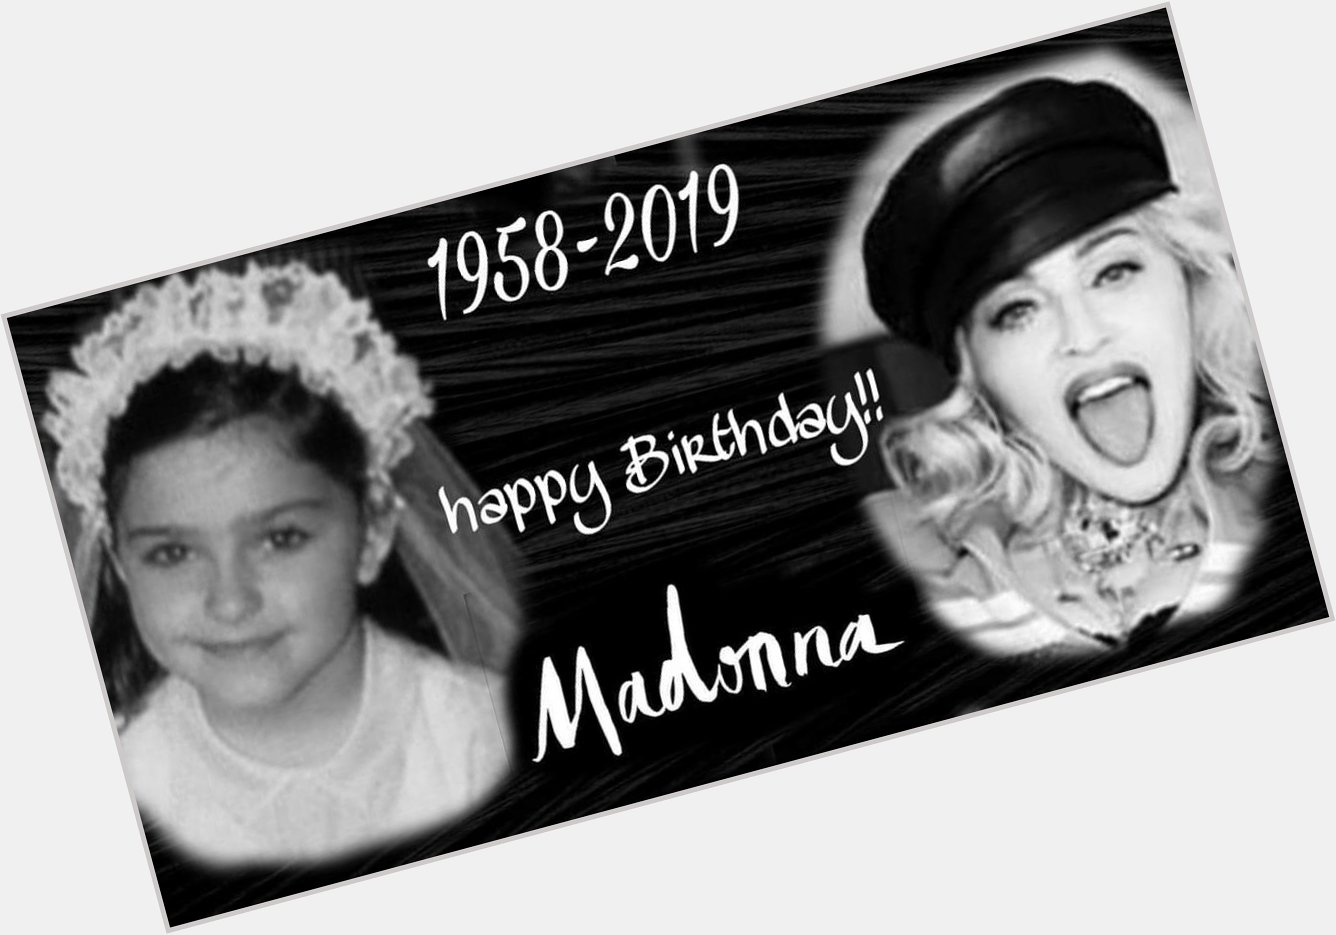 Happy 61st Birthday Madonna! I love you so much! Xx 